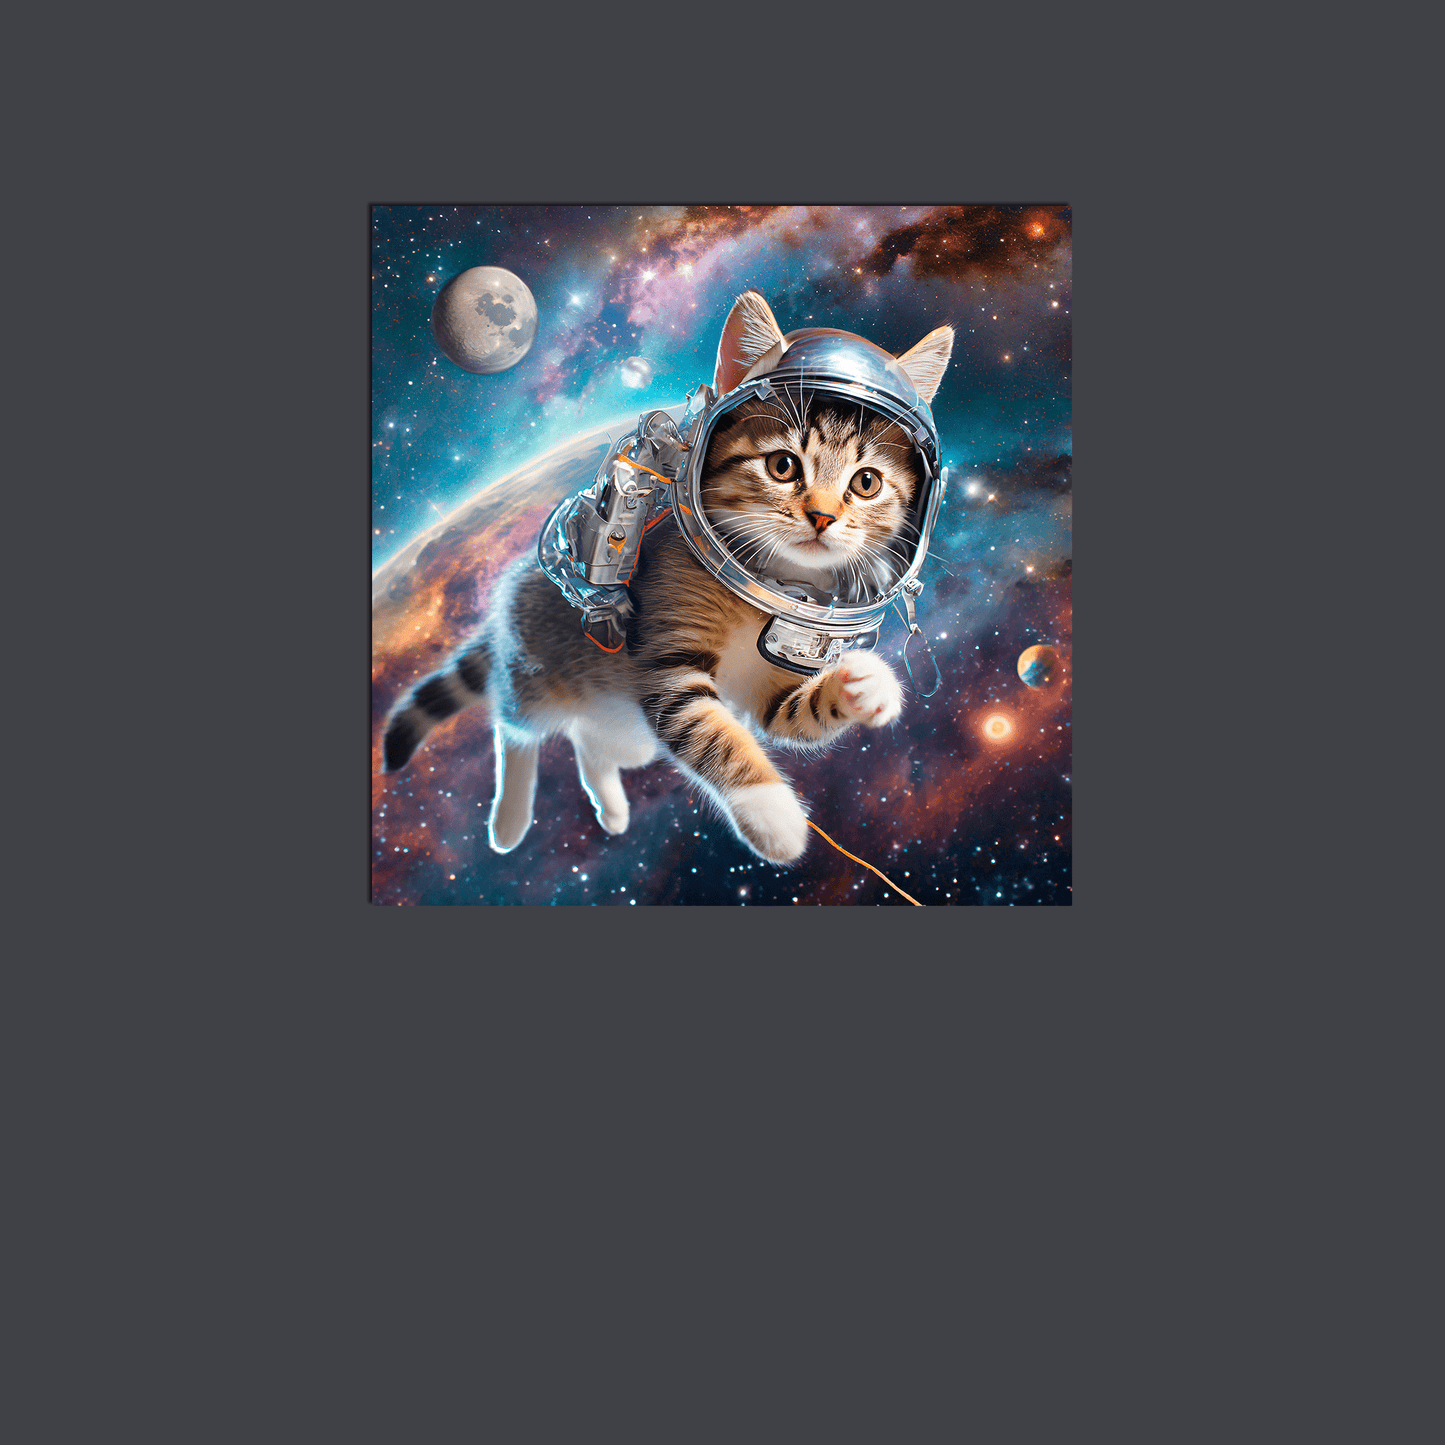 Space Kitty Chasing Cosmic String - Metal Poster - Premium Metal Poster